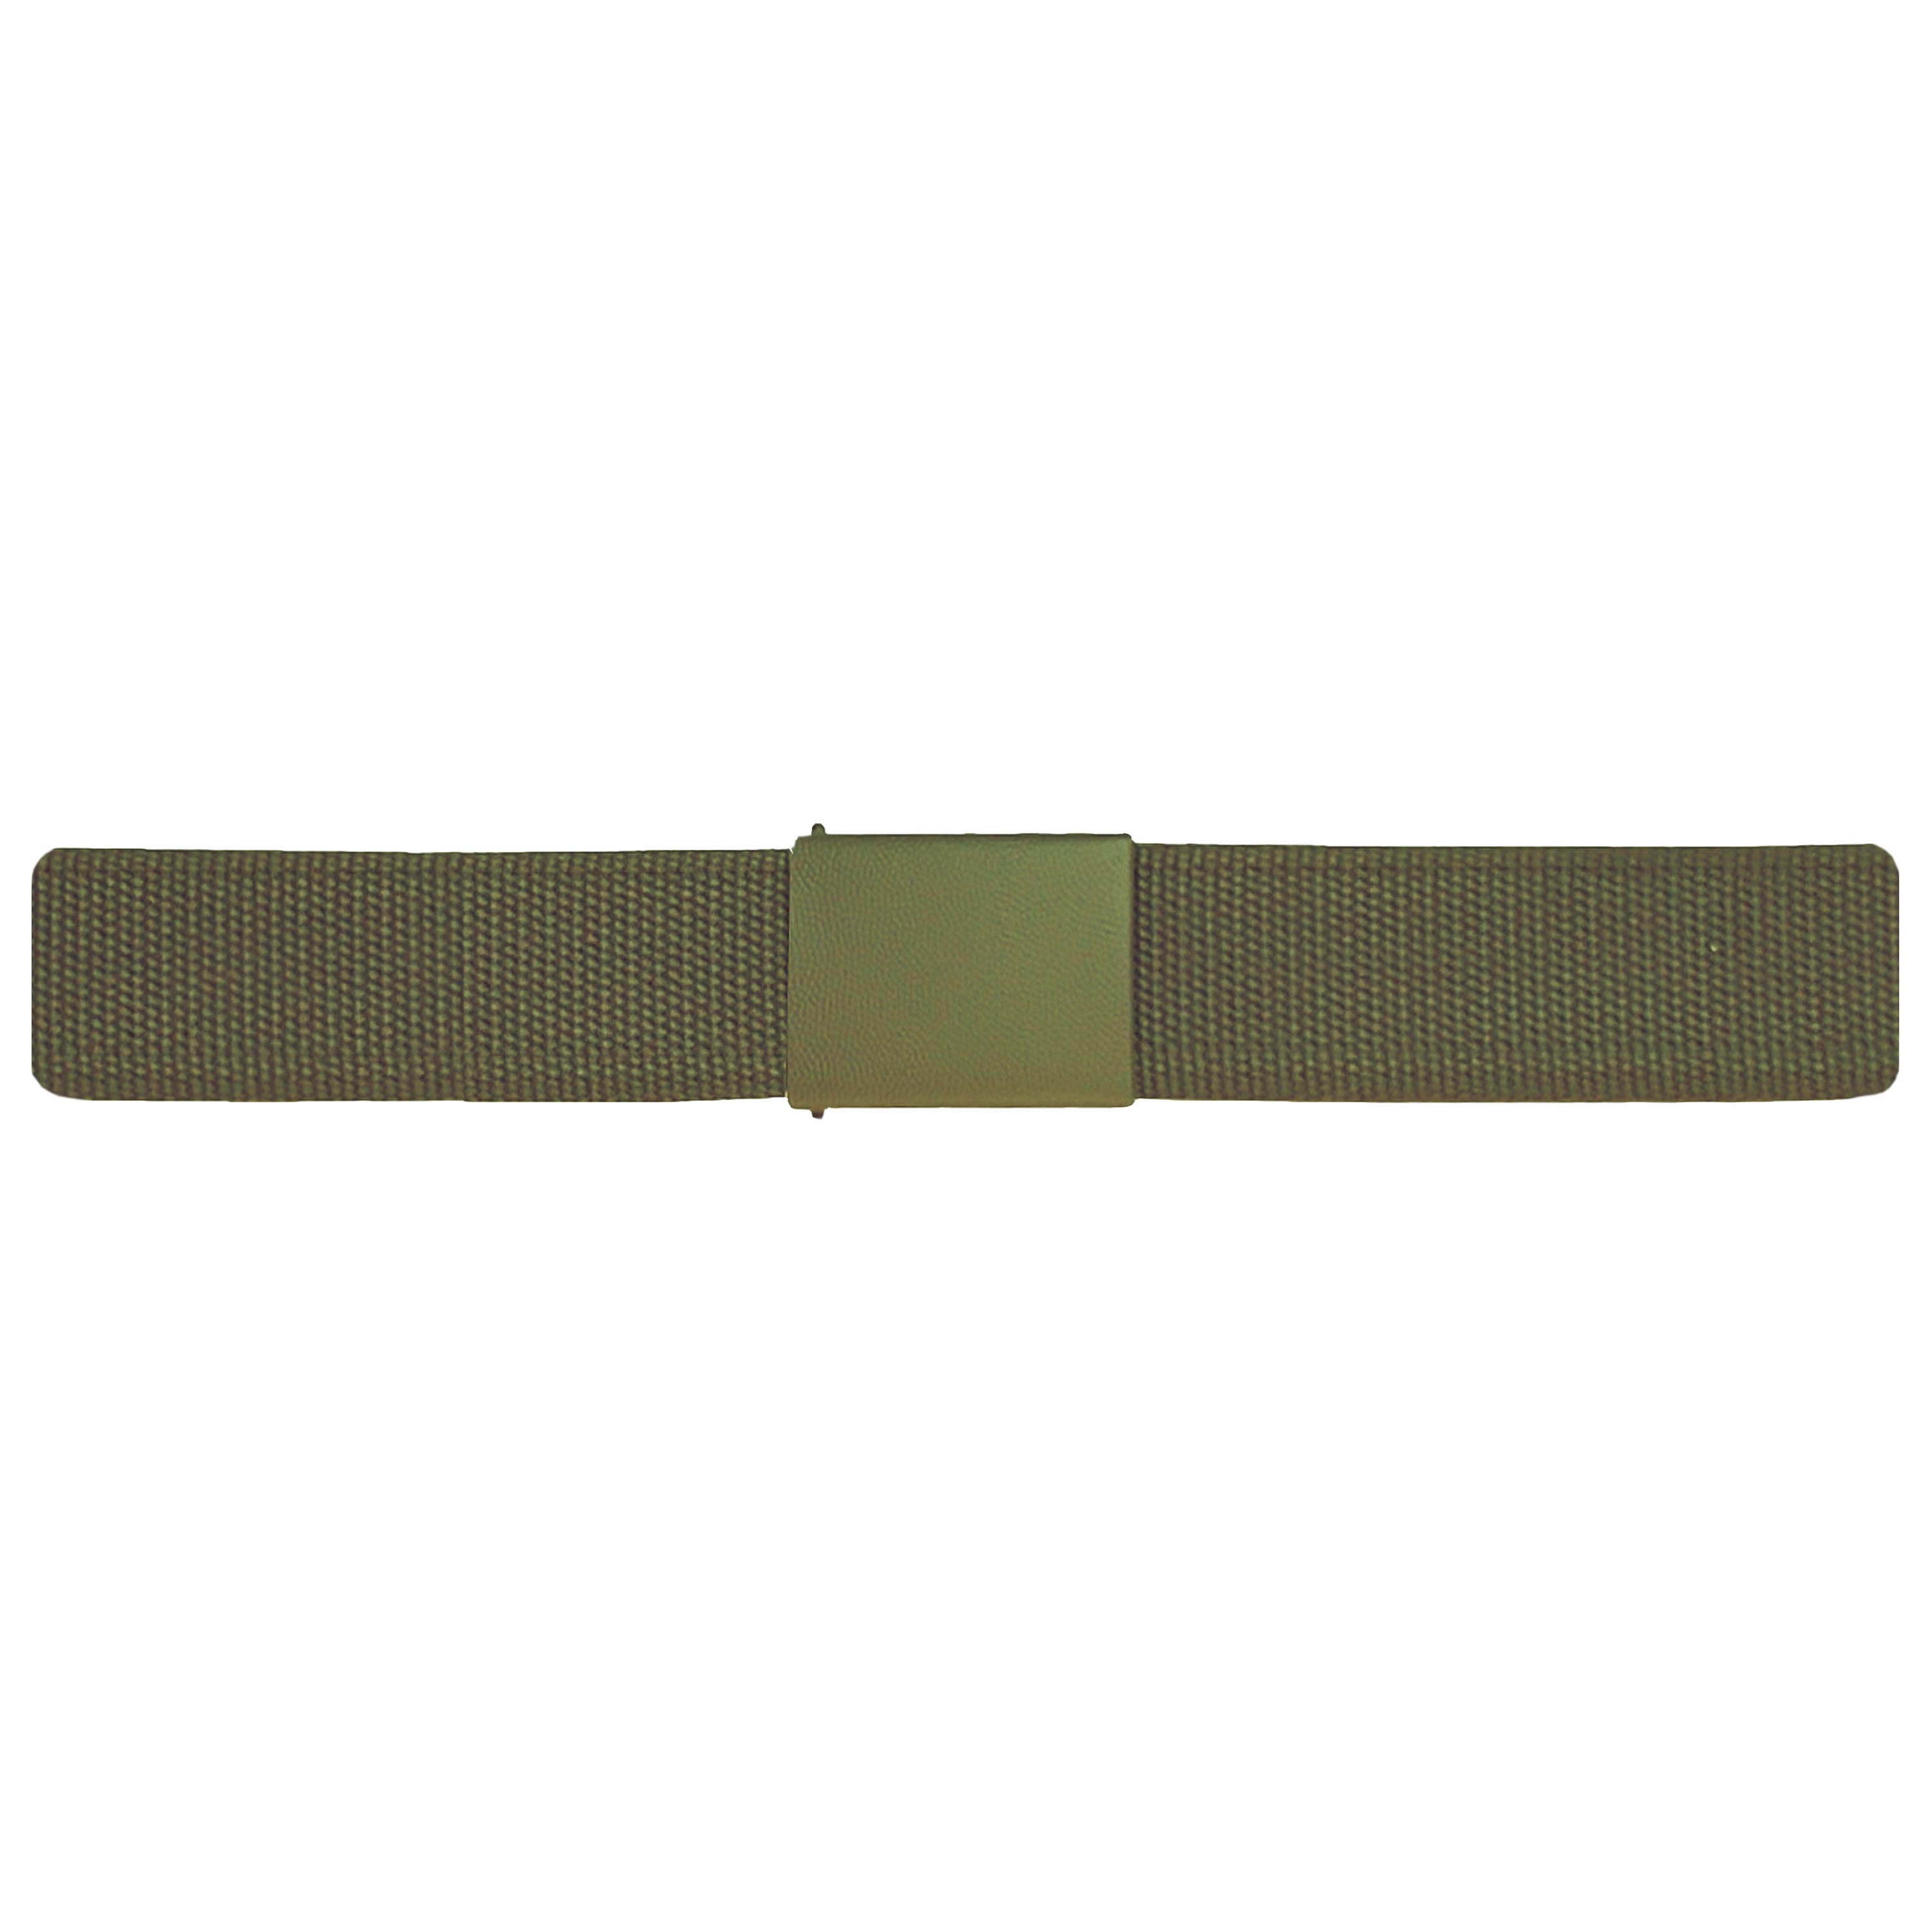 German Army Belt Textile Used olive | German Army Belt Textile Used olive |  Belts | Accessories | Clothing